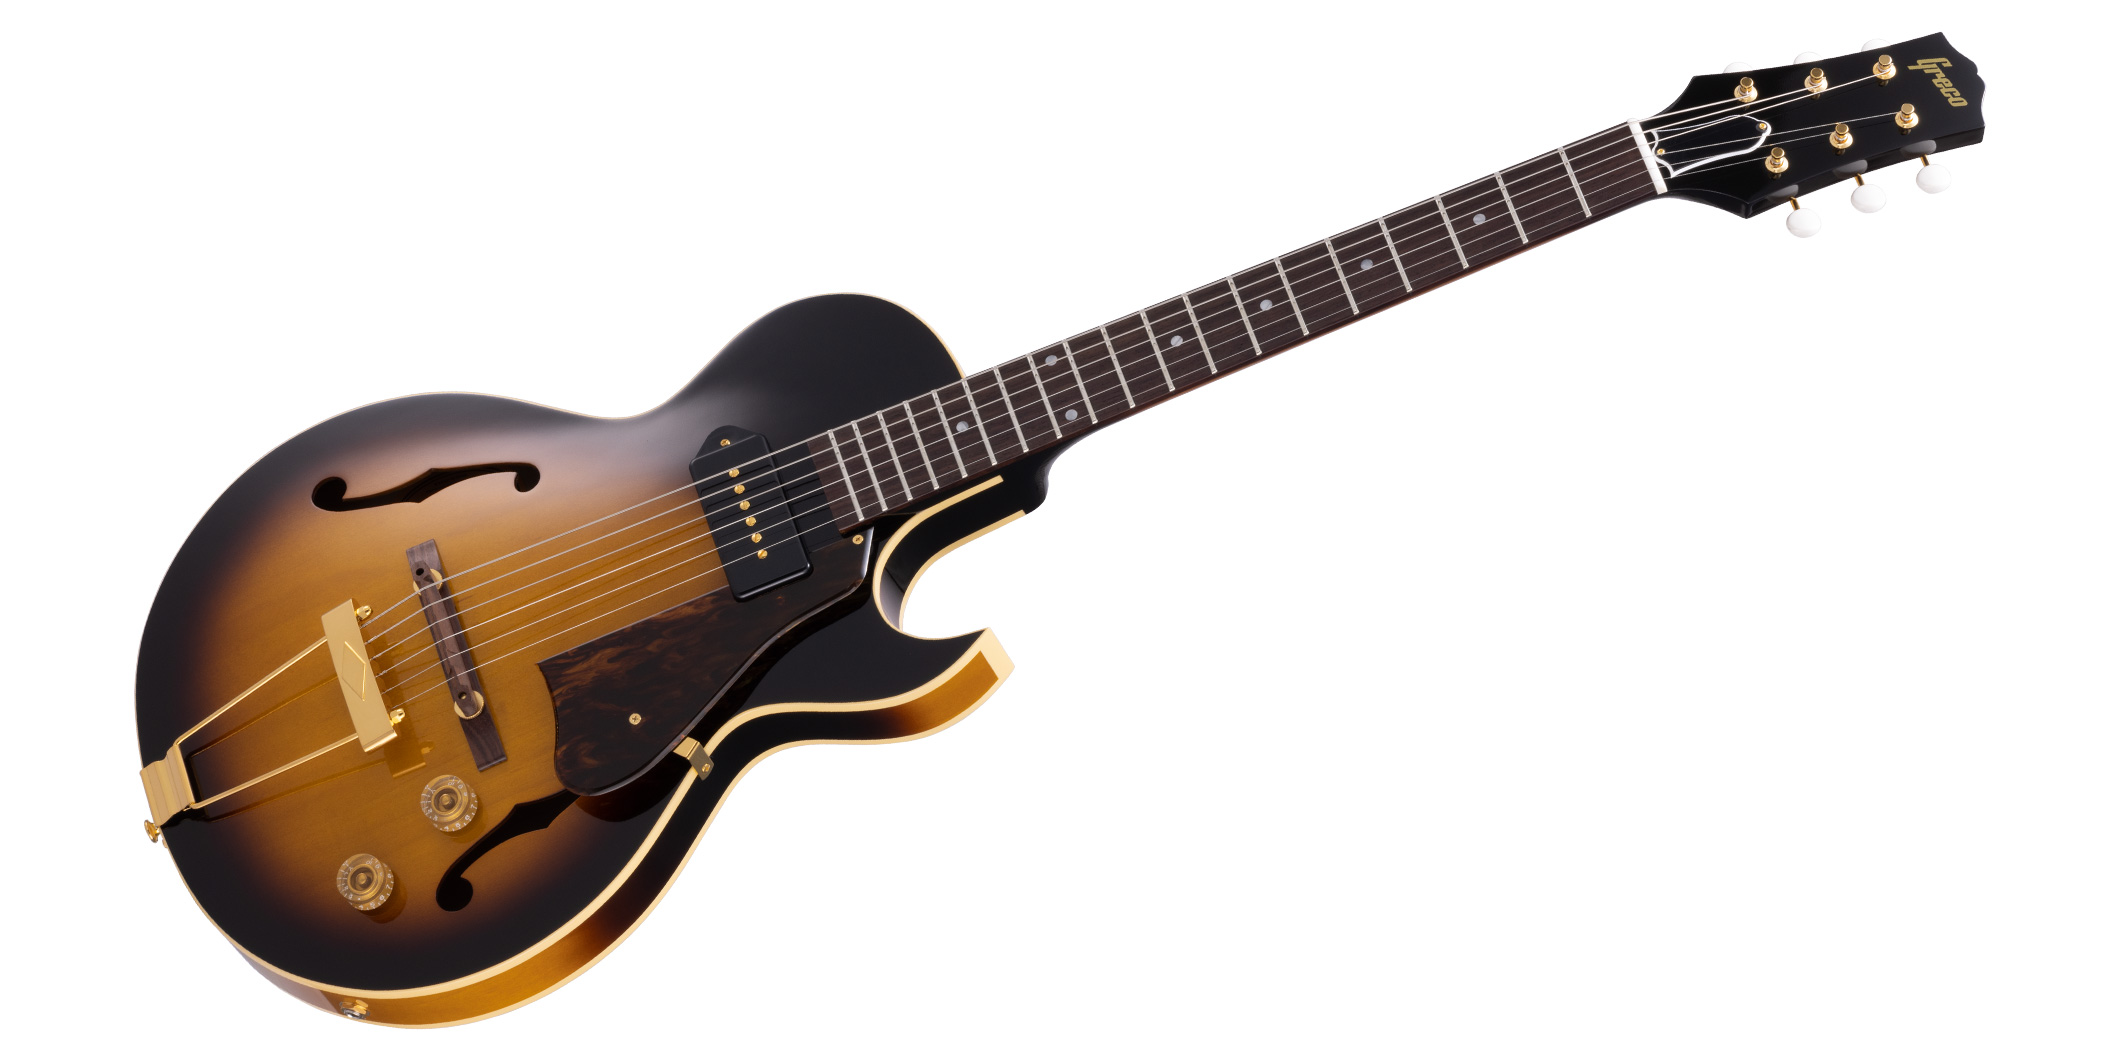 グレコより、トラディショナルなスタイルの小型アーチトップ・ギター“GES-AT”が登場